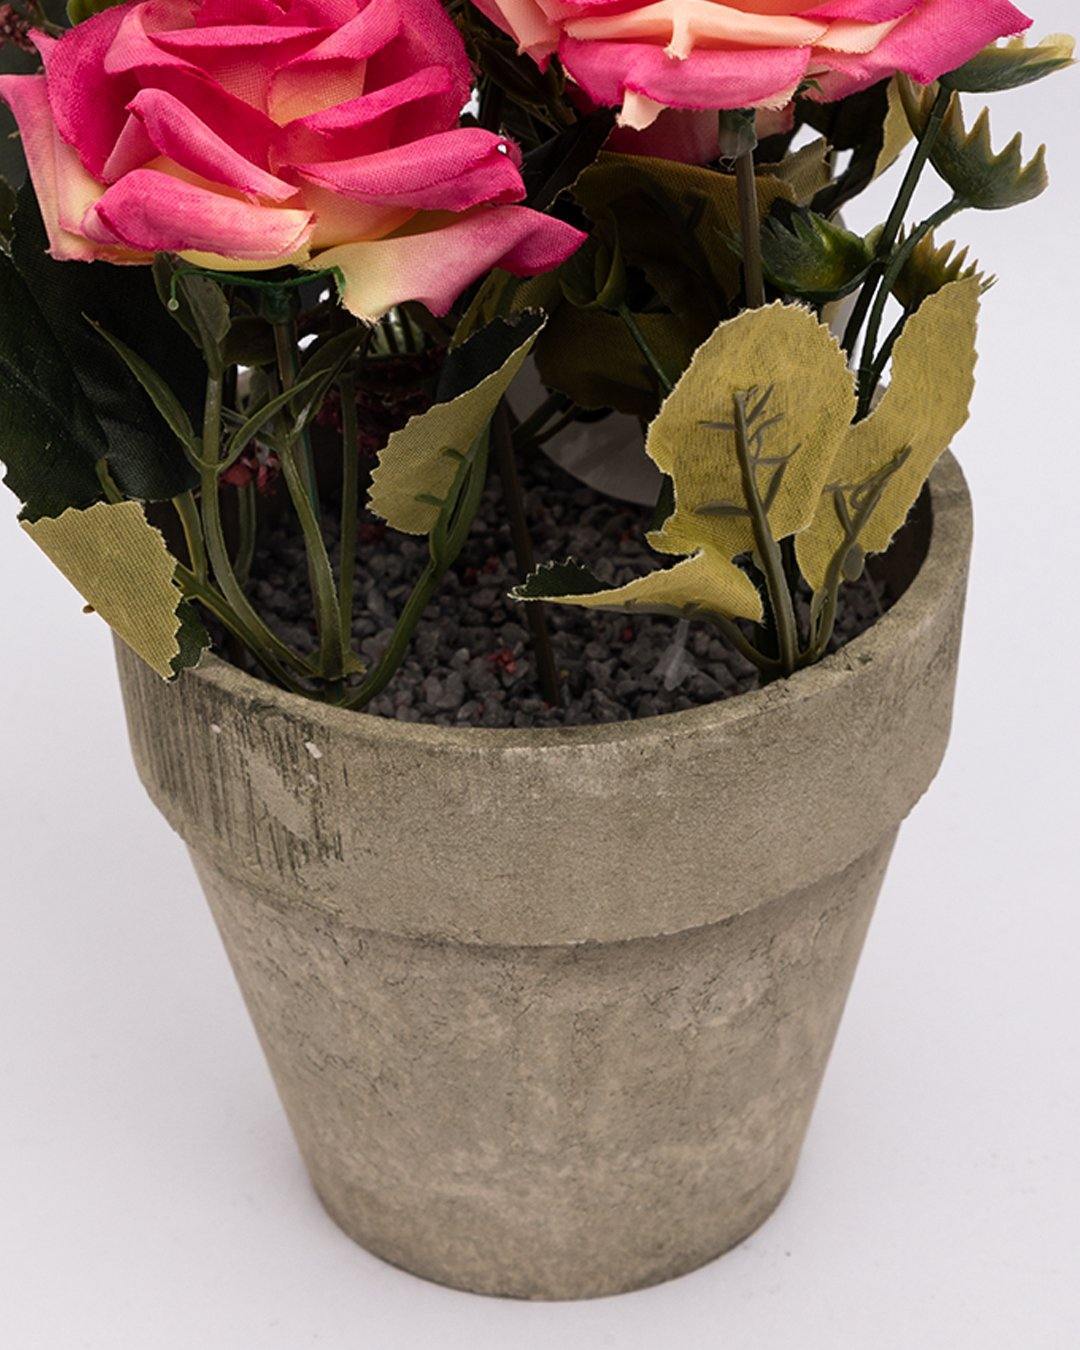 VON CASA Artificial Flower with Pot, Multicolour, Plastic